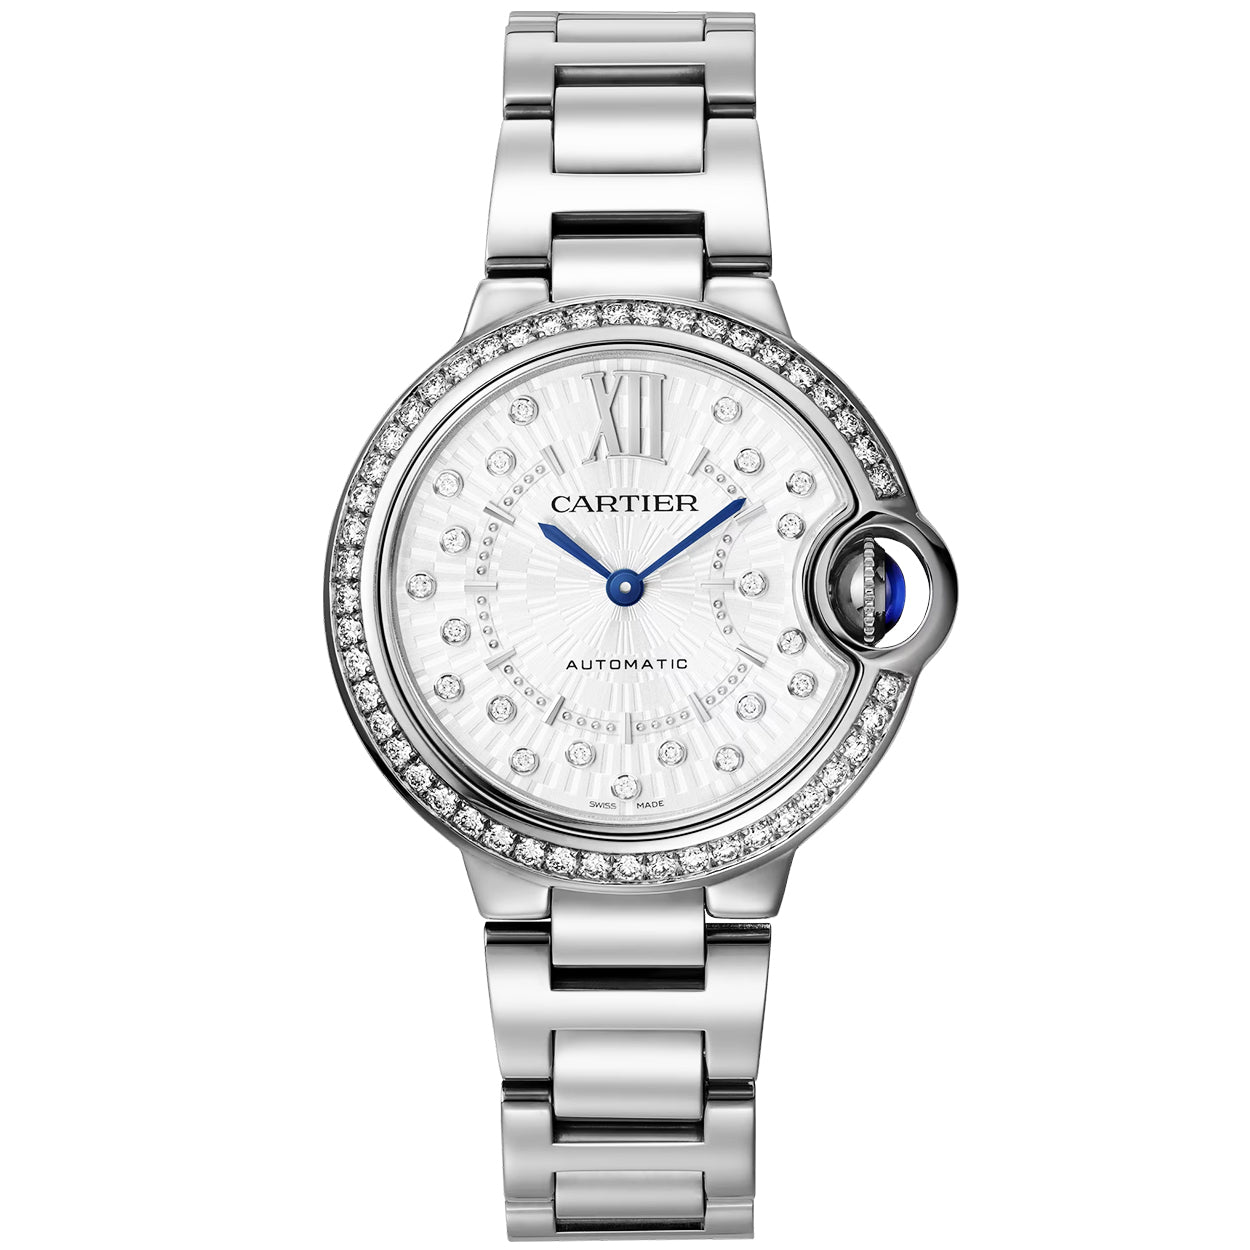 Ballon Bleu de Cartier 33mm Diamond Dial & Bezel Watch